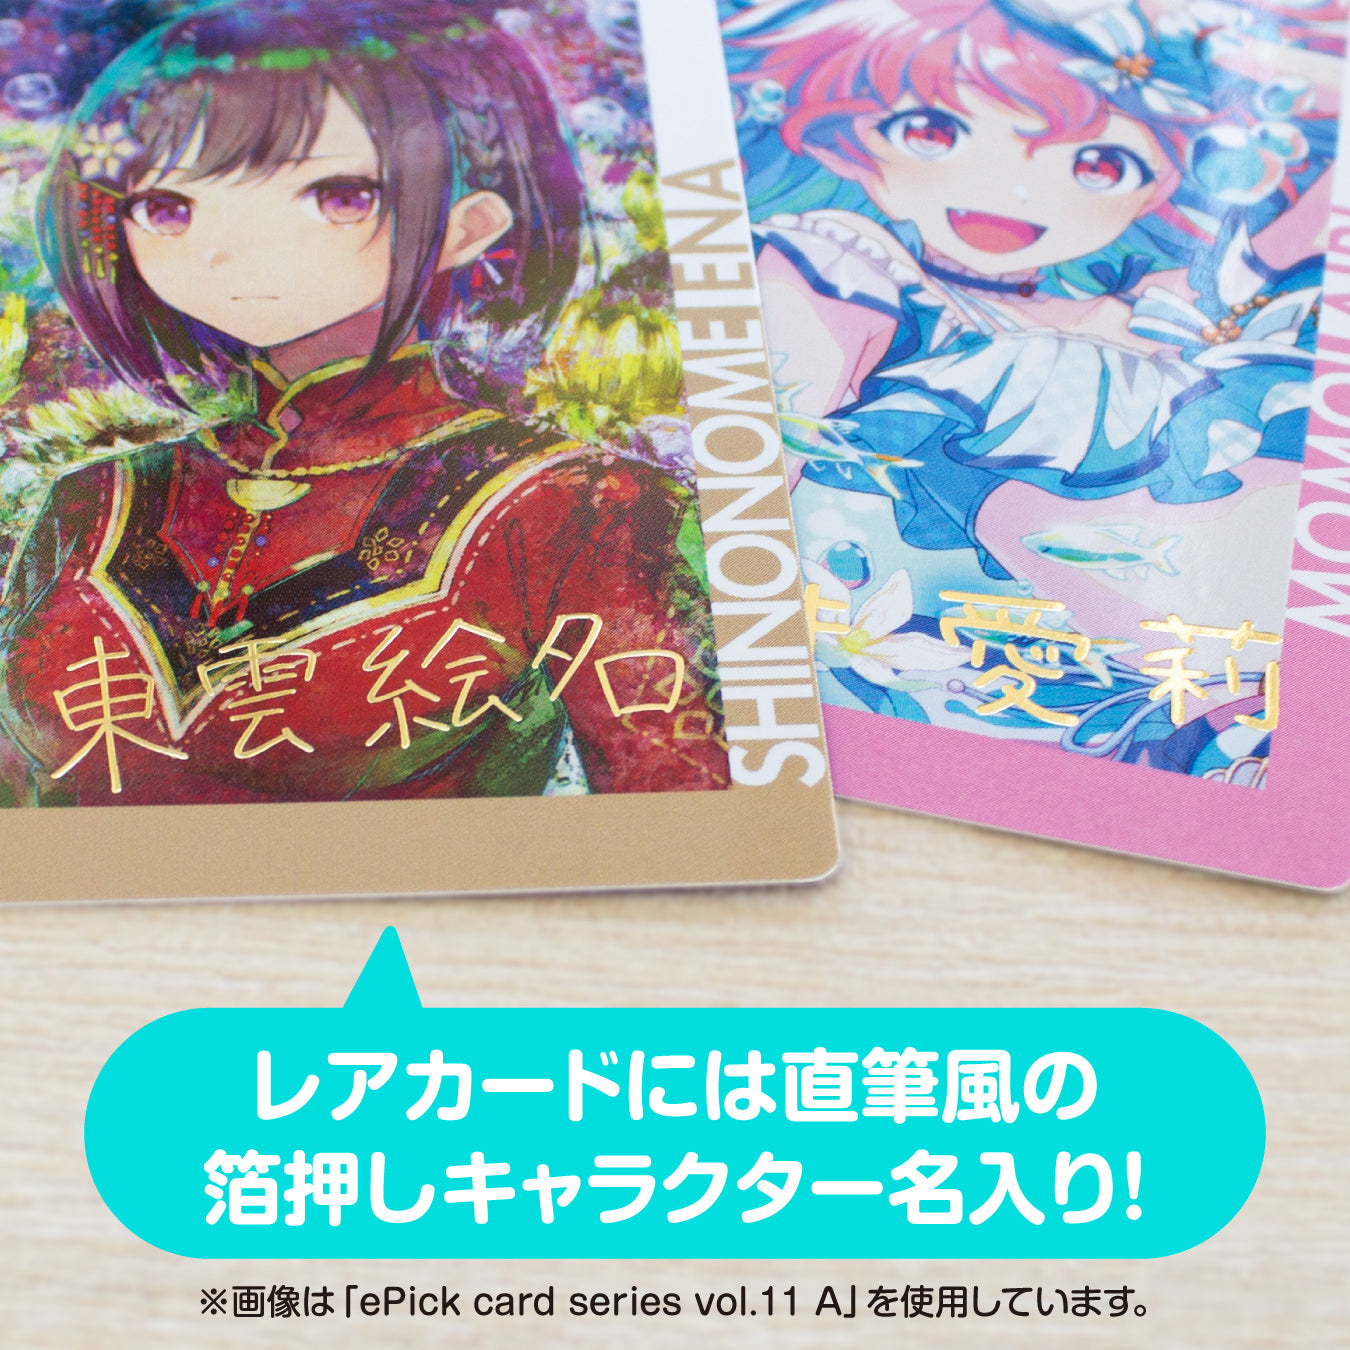 ePick card series vol.11 A BOX 特典付き［暁山 瑞希］